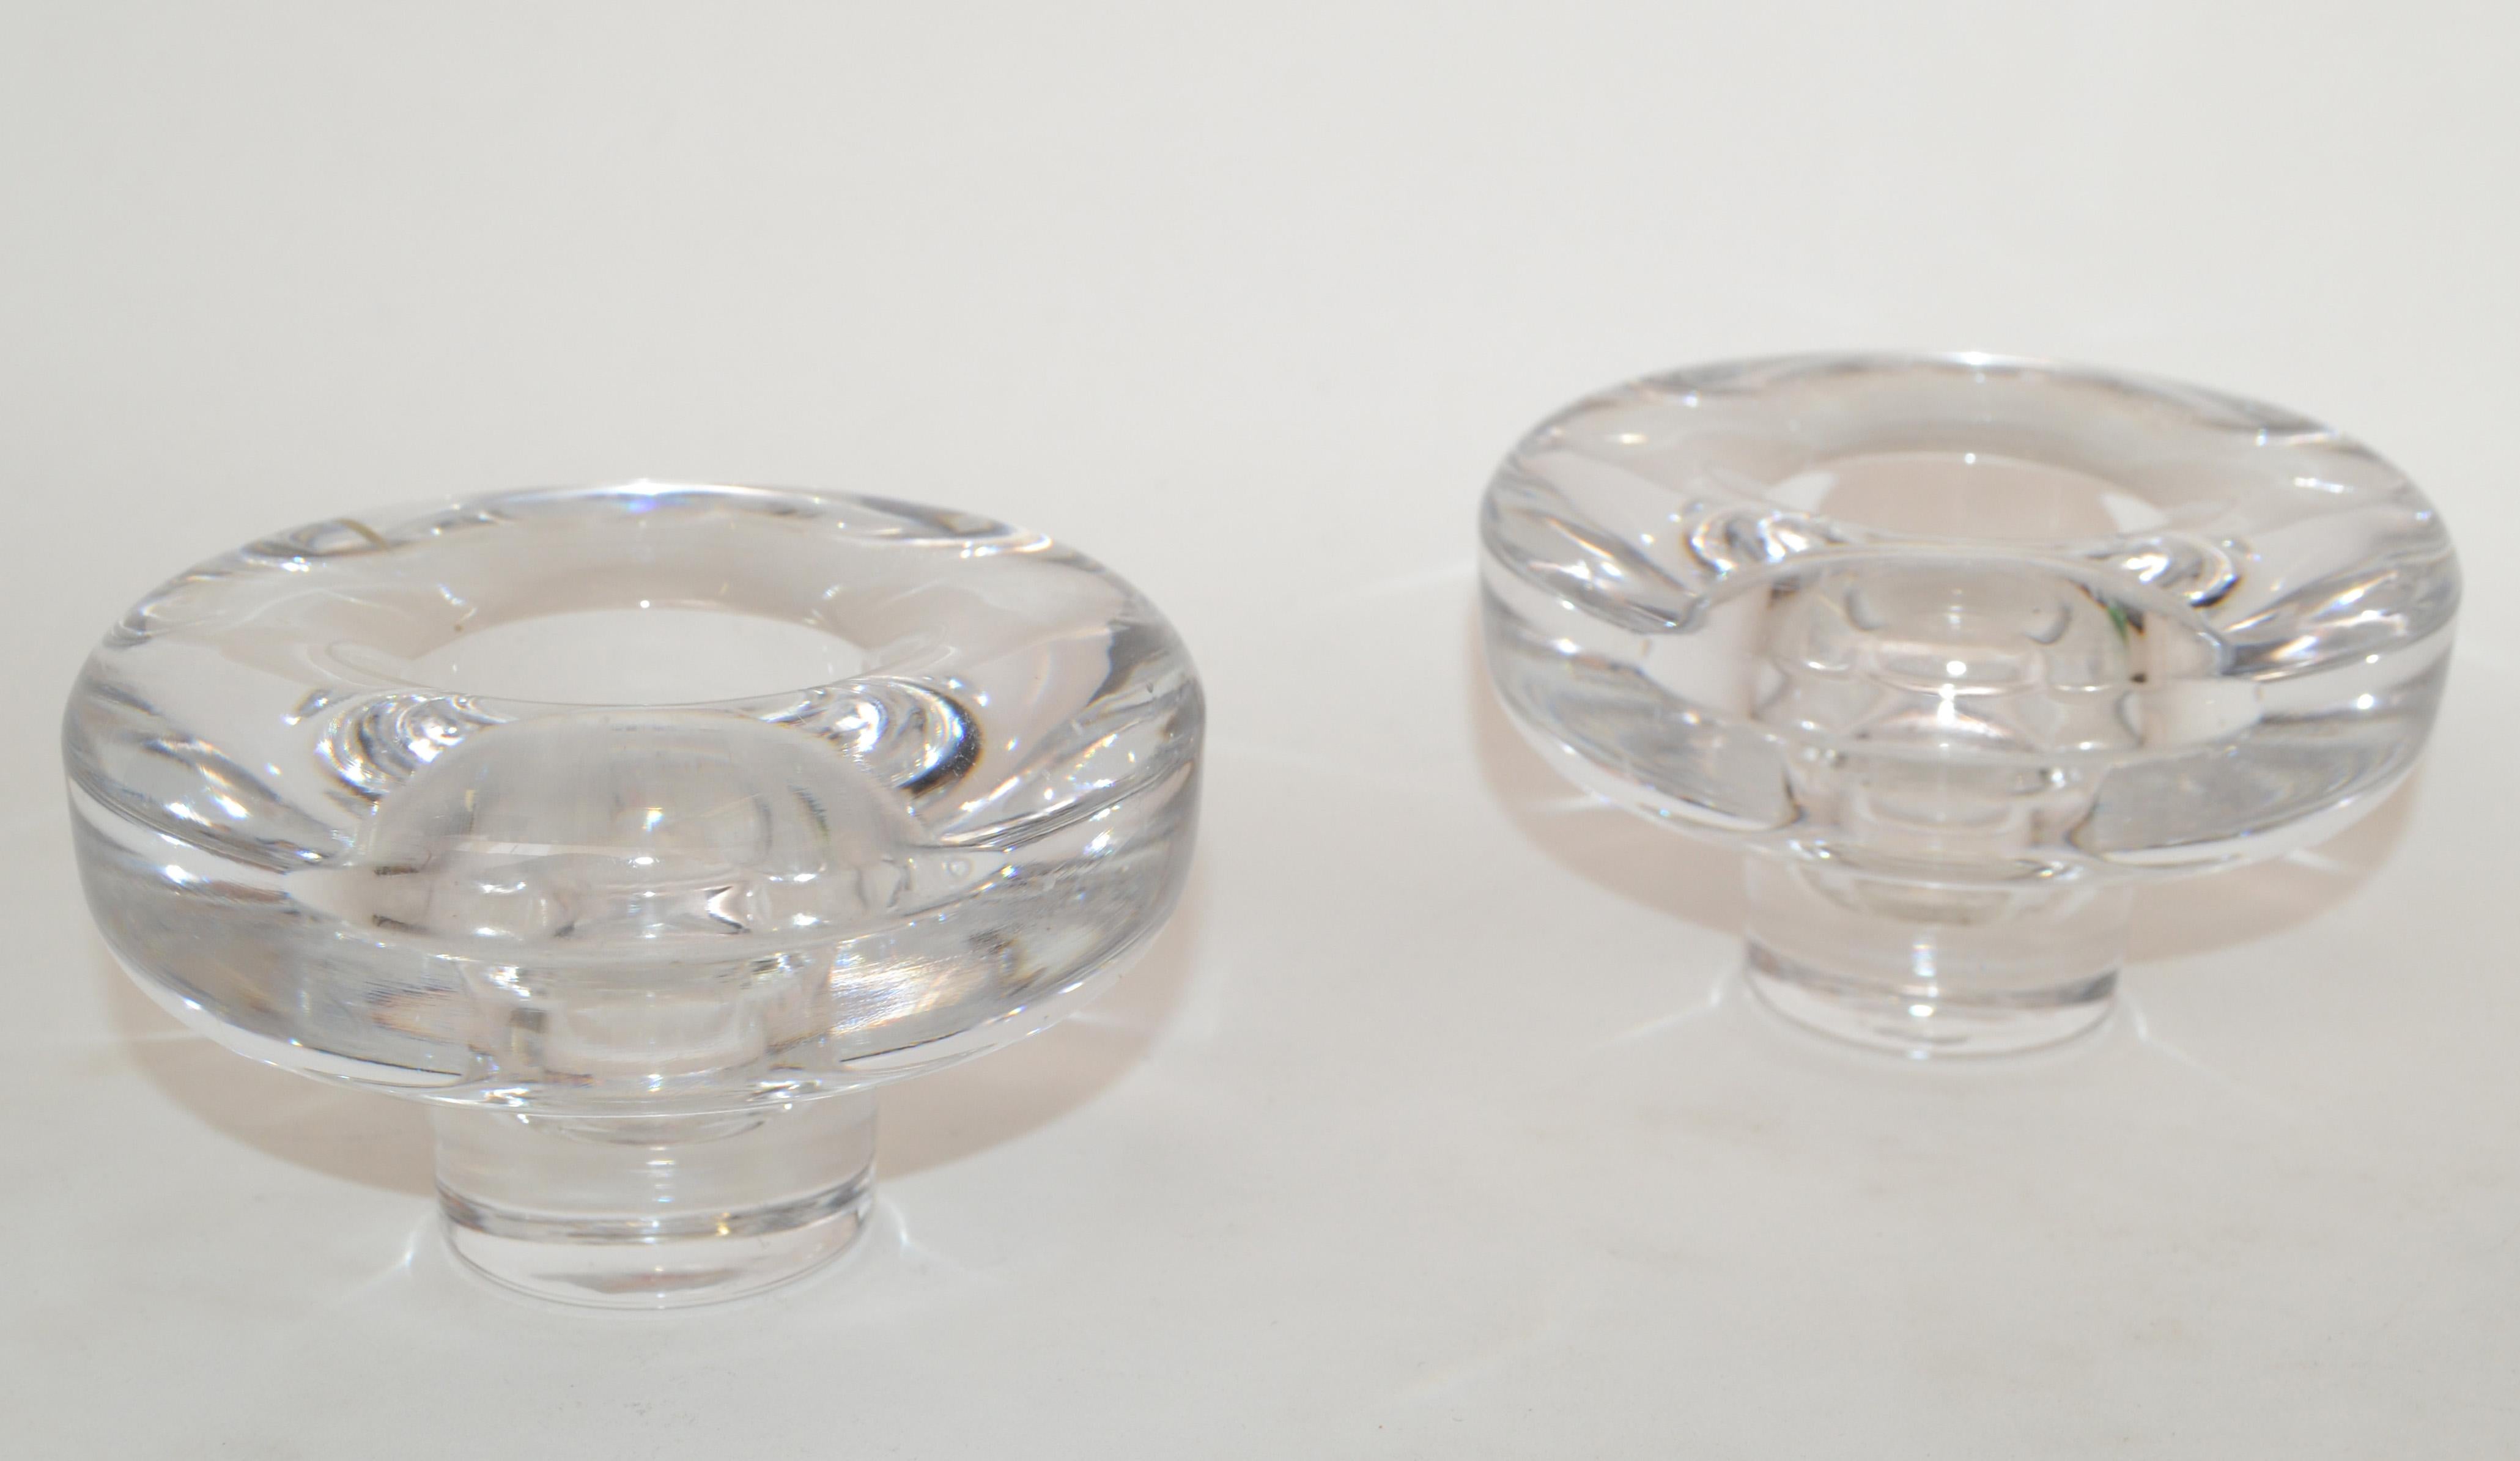 Paar skandinavische Mid-Century Modern Dansk Designs runde Bleikristall Glas Kerzenhalter.
Unterhalb von Dansk International Designs LTD IHQ Japan auf der Unterseite etikettiert.